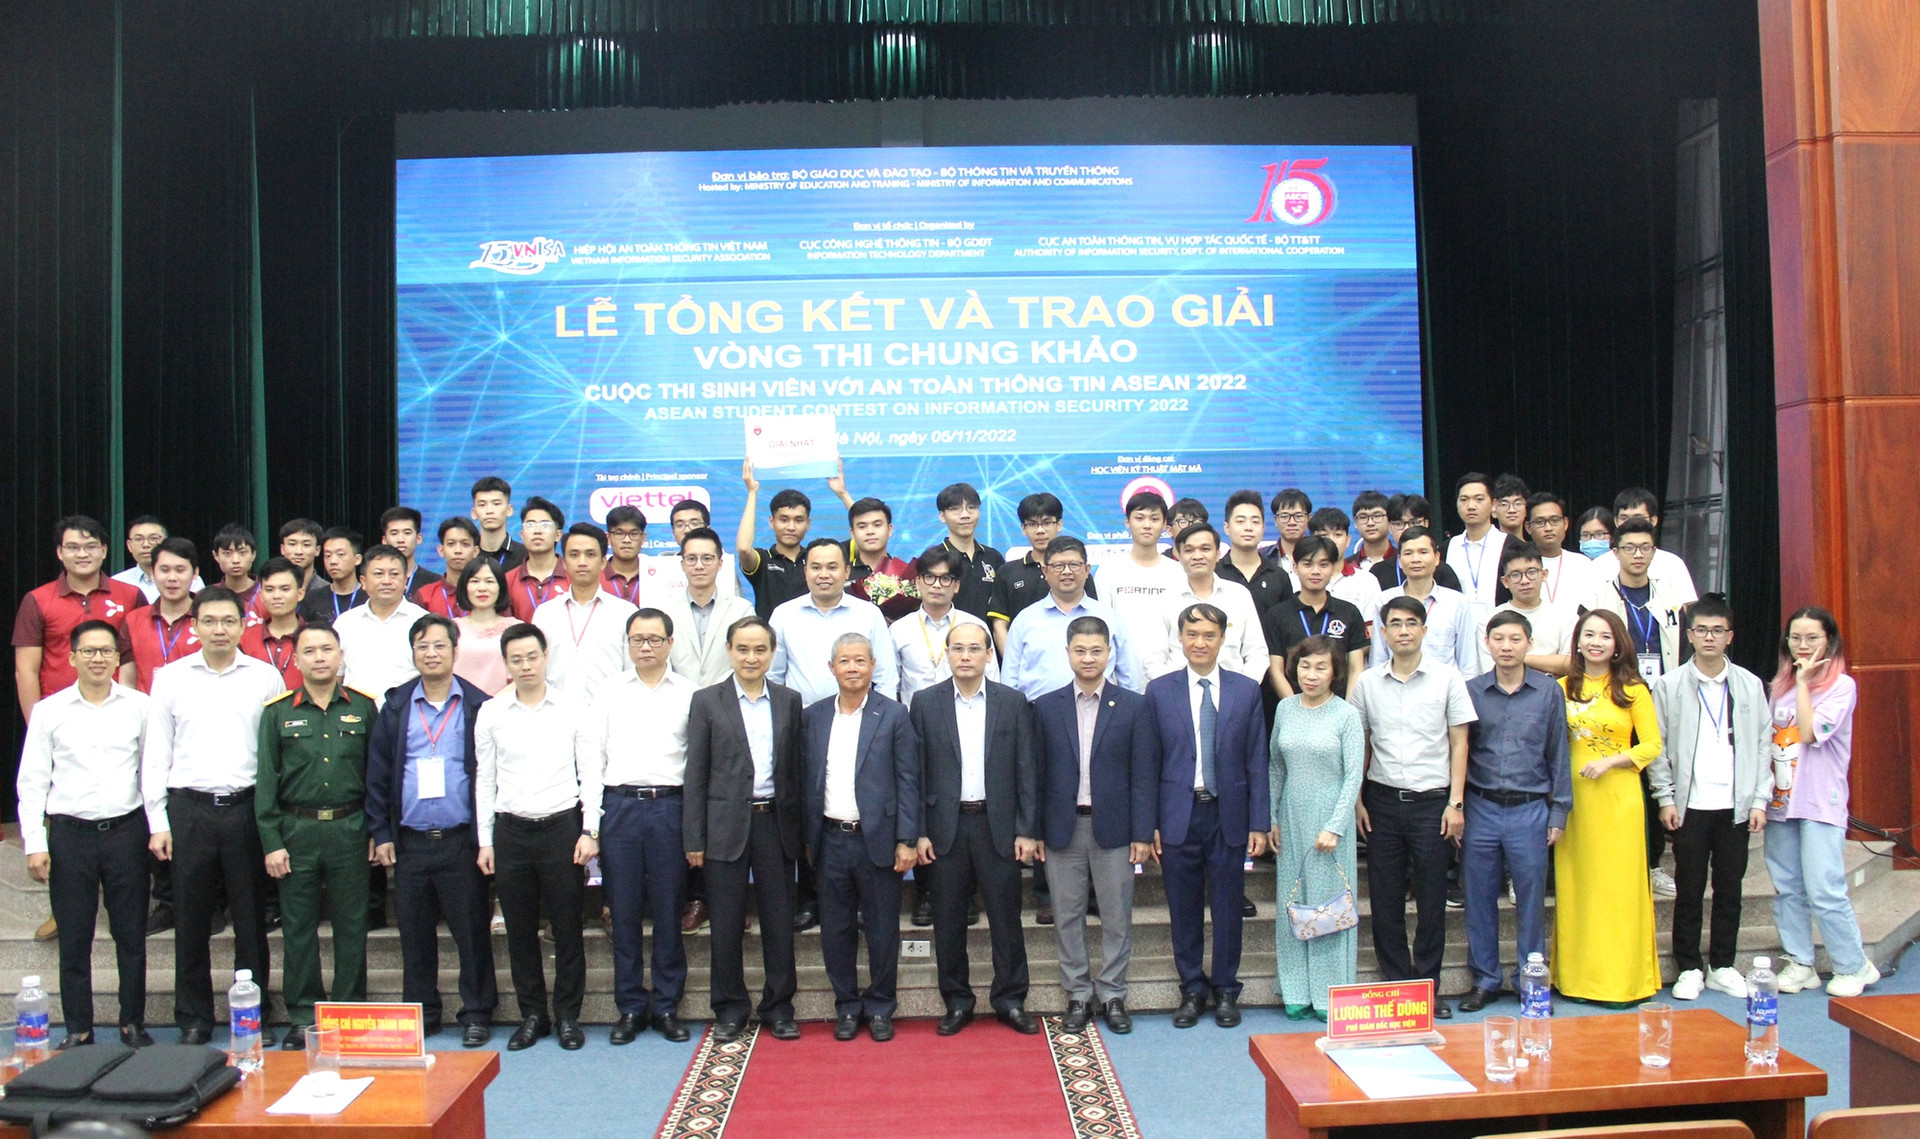 ĐH CNTT - ĐHQG TP. HCM đạt giải Nhất cuộc thi sinh viên với ATTT ASEAN lần thứ 15 - Ảnh 6.